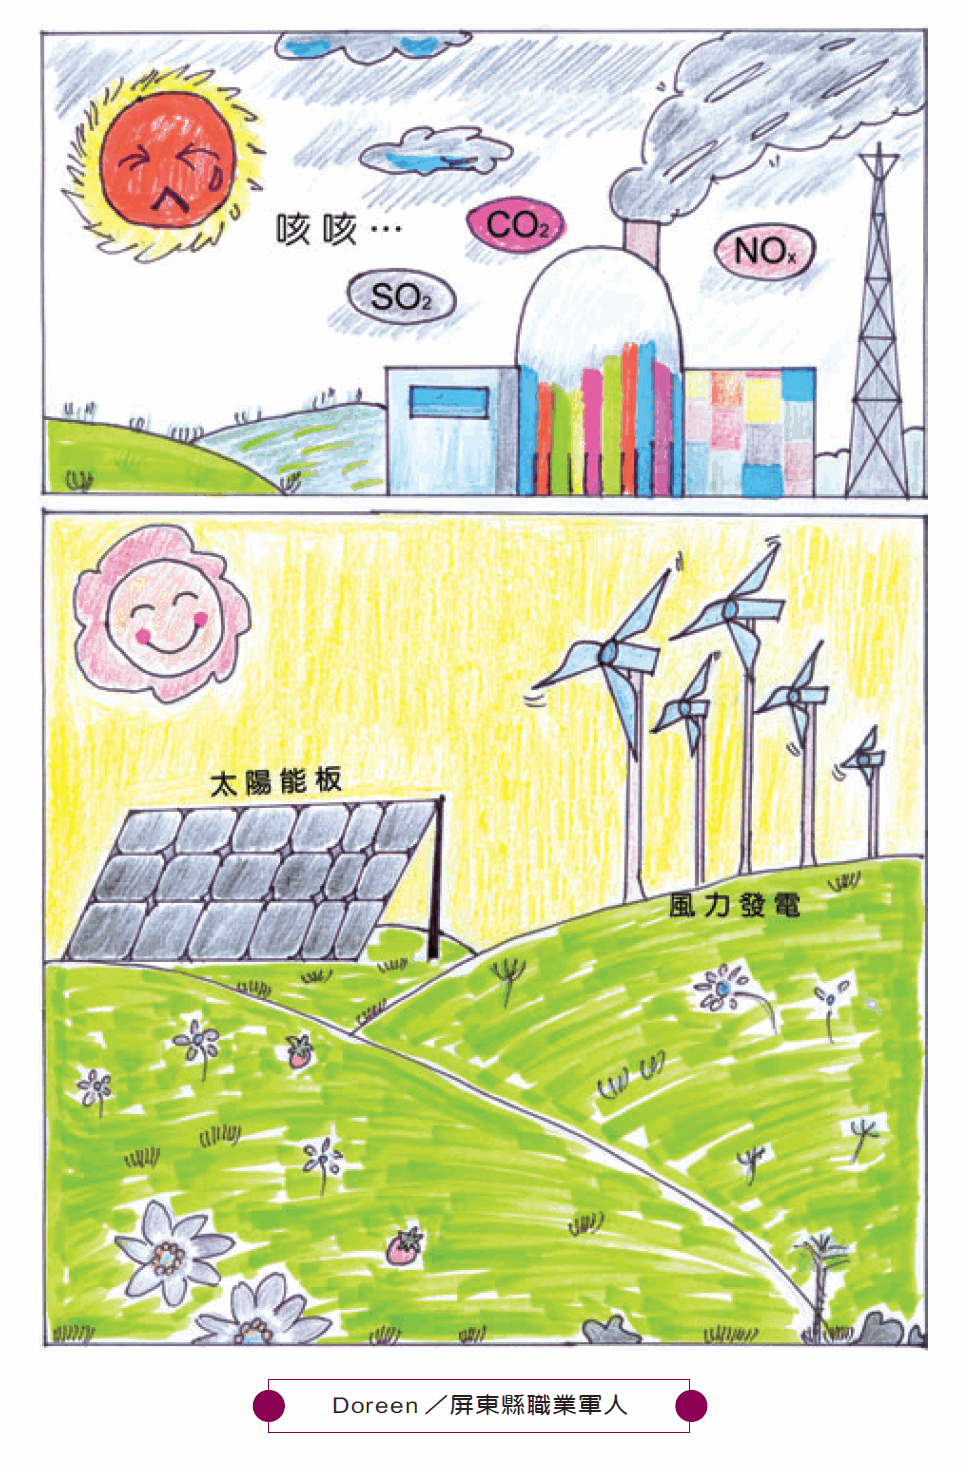 太陽能板與風力發電漫畫